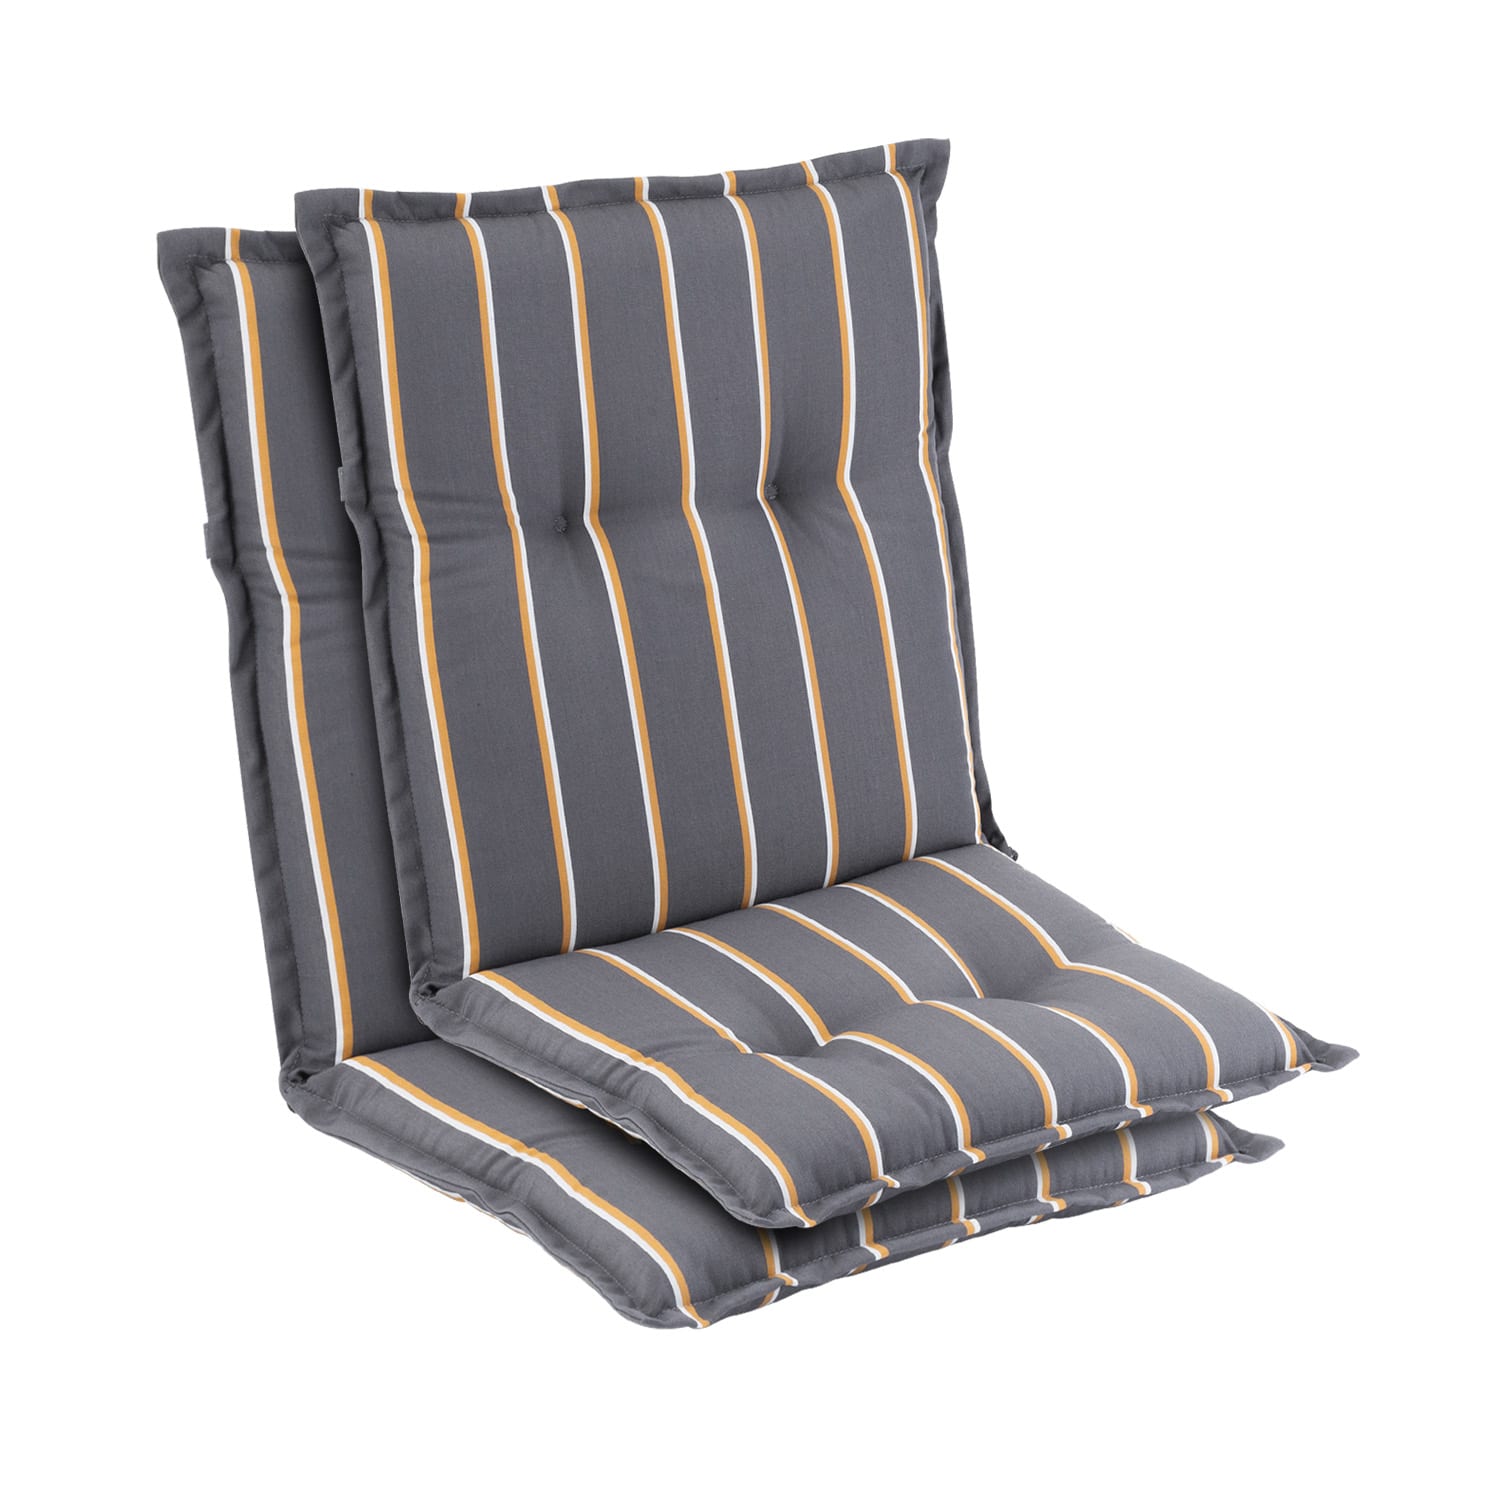 Levně Prato, čalouněná podložka, podložka na židli, podložka na nižší polohovací křeslo, na zahradní židli, polyester, 50 x 100 x 8 cm, 2 x sedák